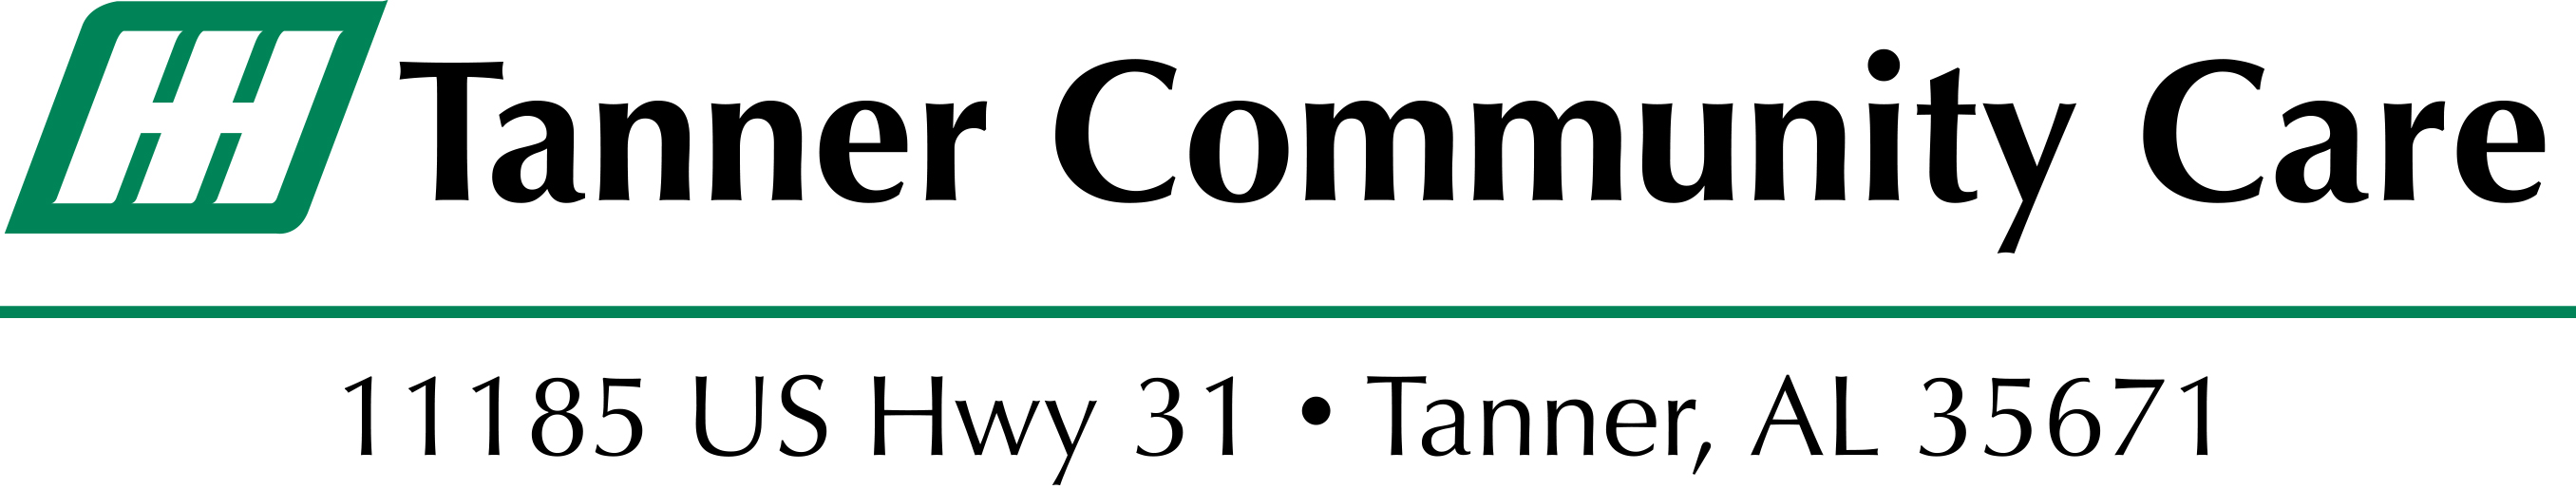 ALH TannerCommunityCare Logo1